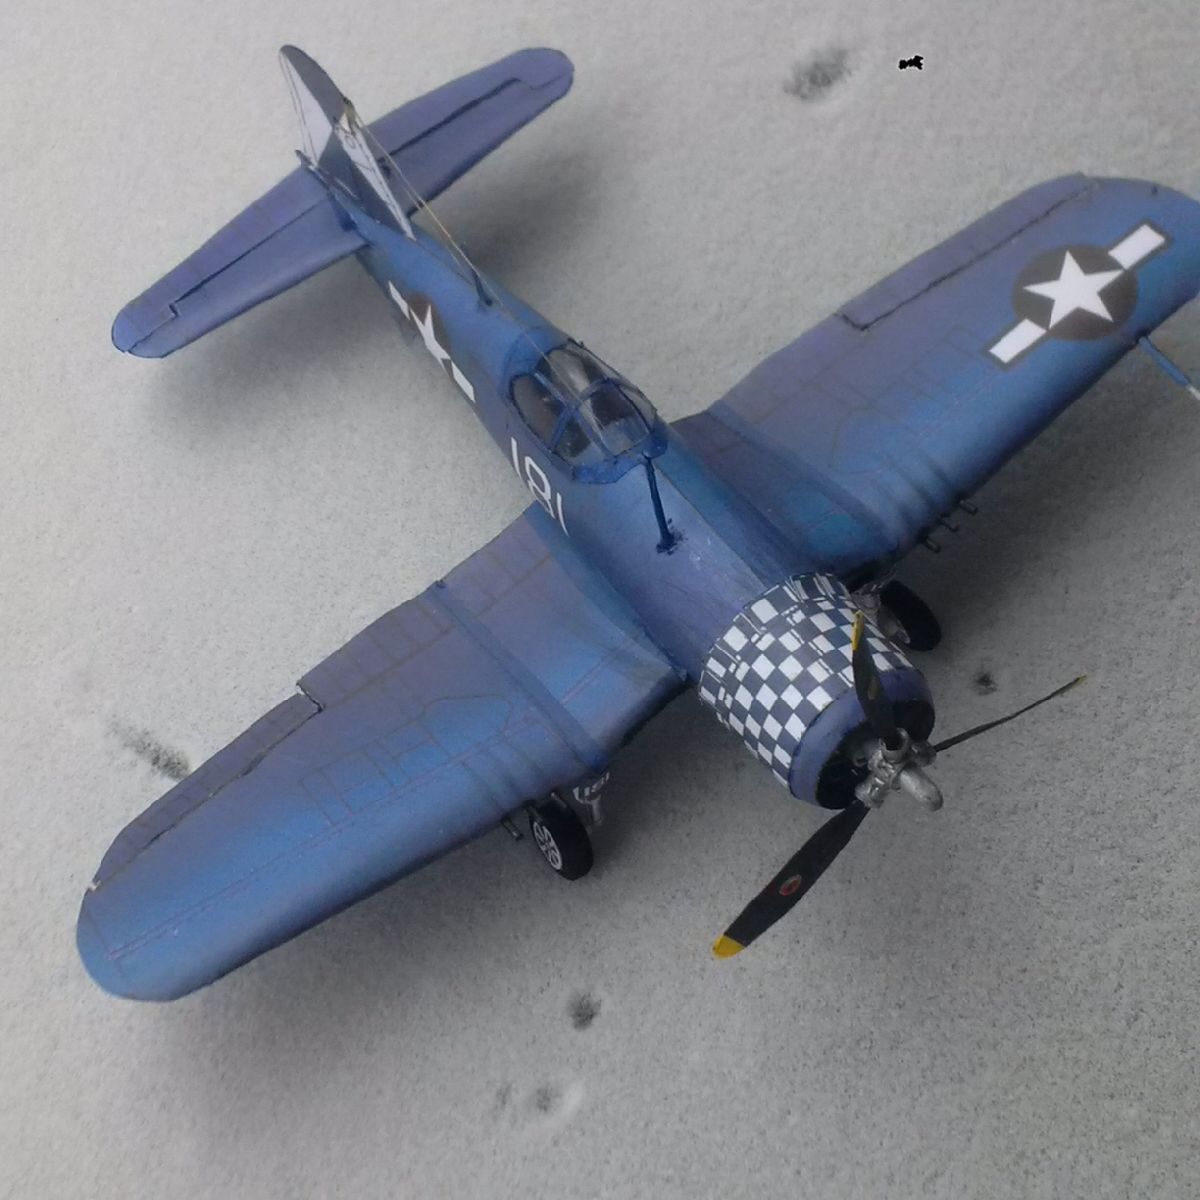 Vought's F4U Corsair model